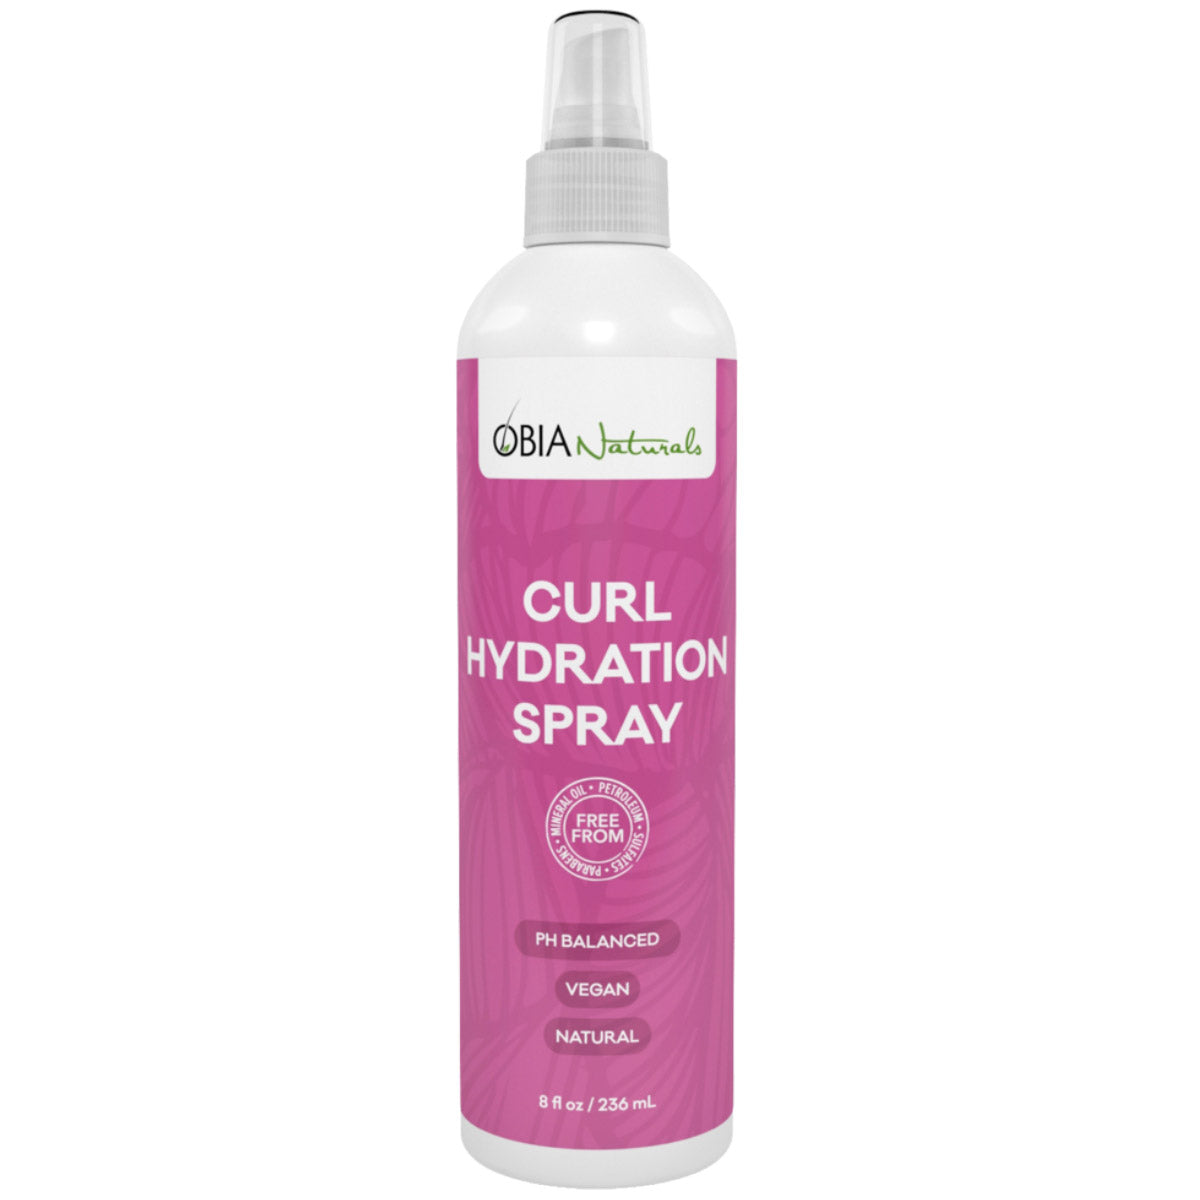 Le Curl Hydration Spray hydrate et rafraîchit au quotidien les cheveux et le cuir chevelu avec des ingrédients naturels comme l'Huile d'Argan et l'Huile de Rose.